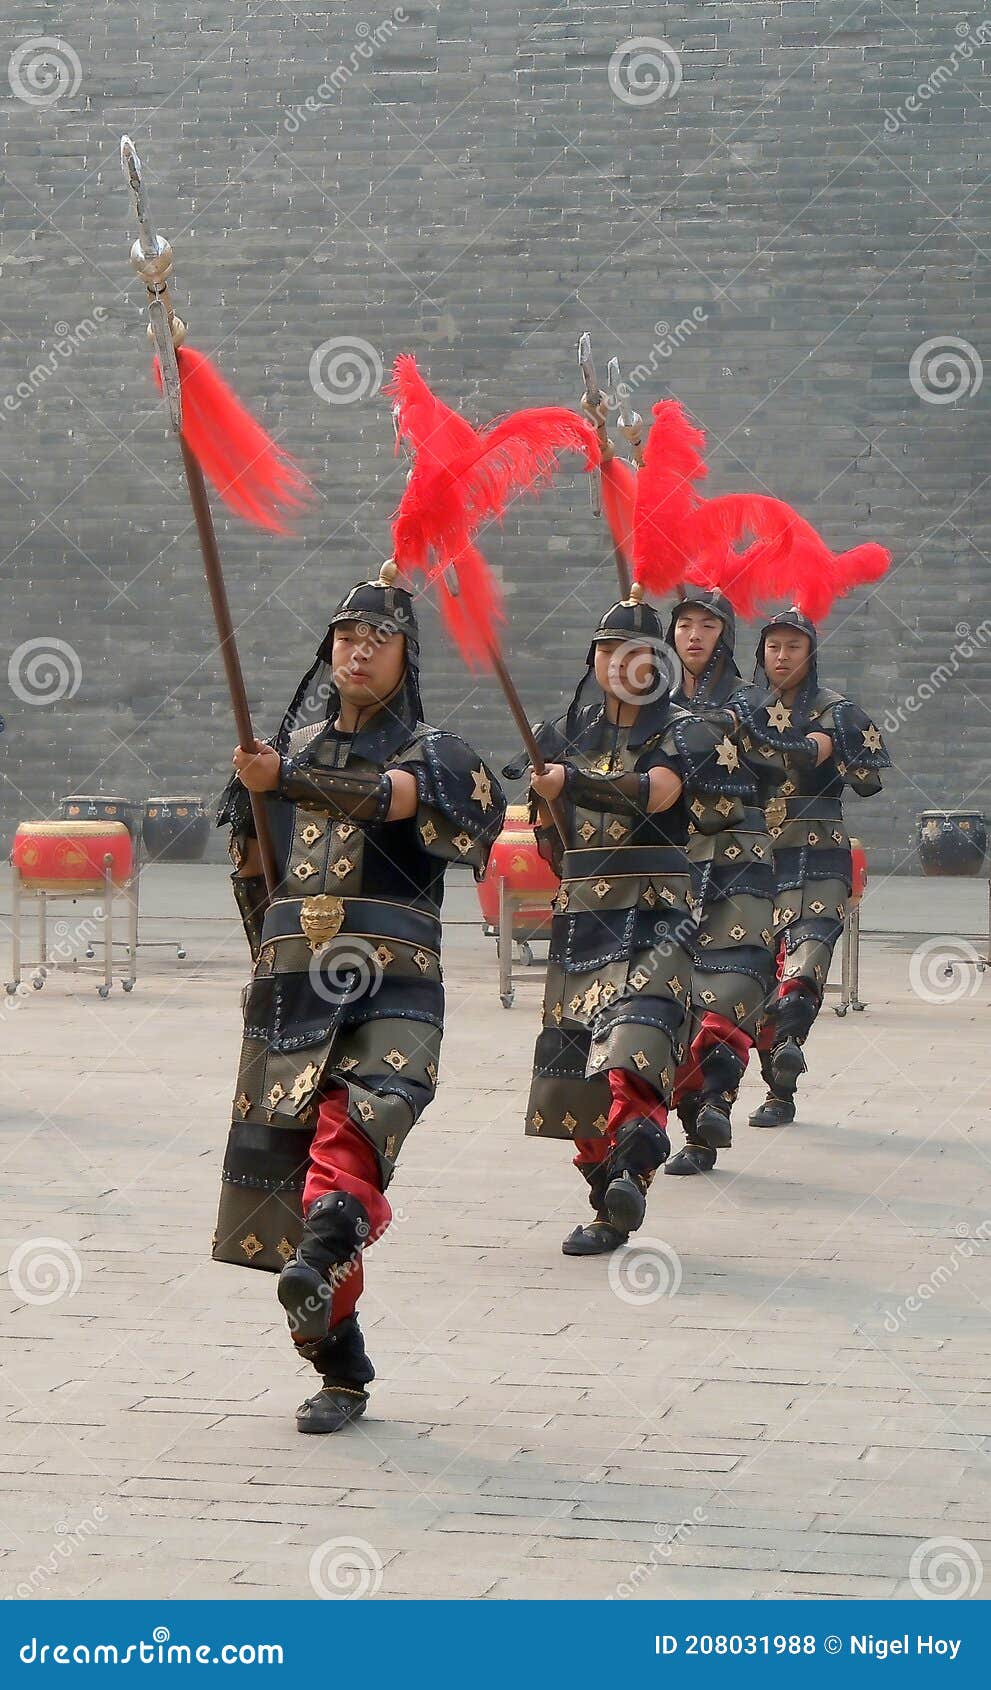 https://thumbs.dreamstime.com/z/grupo-de-soldados-con-traje-militar-hist%C3%B3rico-un-uniforme-en-la-antigua-muralla-ciudad-xian-china-208031988.jpg